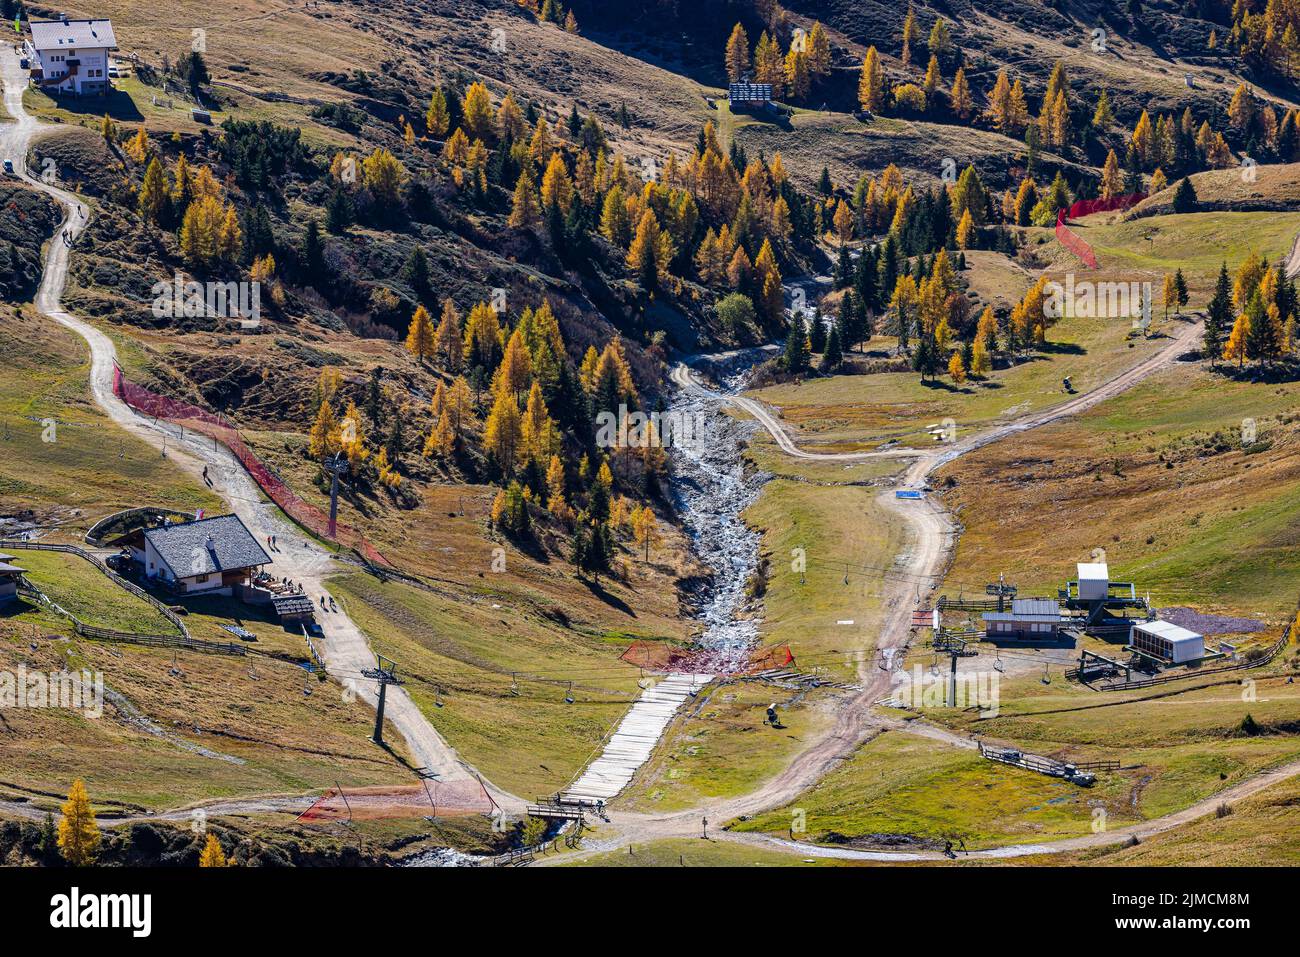 Kirchsteiger e Meraner Hütte in paesaggio autunnale, Merano 2000 comprensorio sciistico ed escursionistico, vicino a Merano, Alto Adige, Italia, Europa Foto Stock